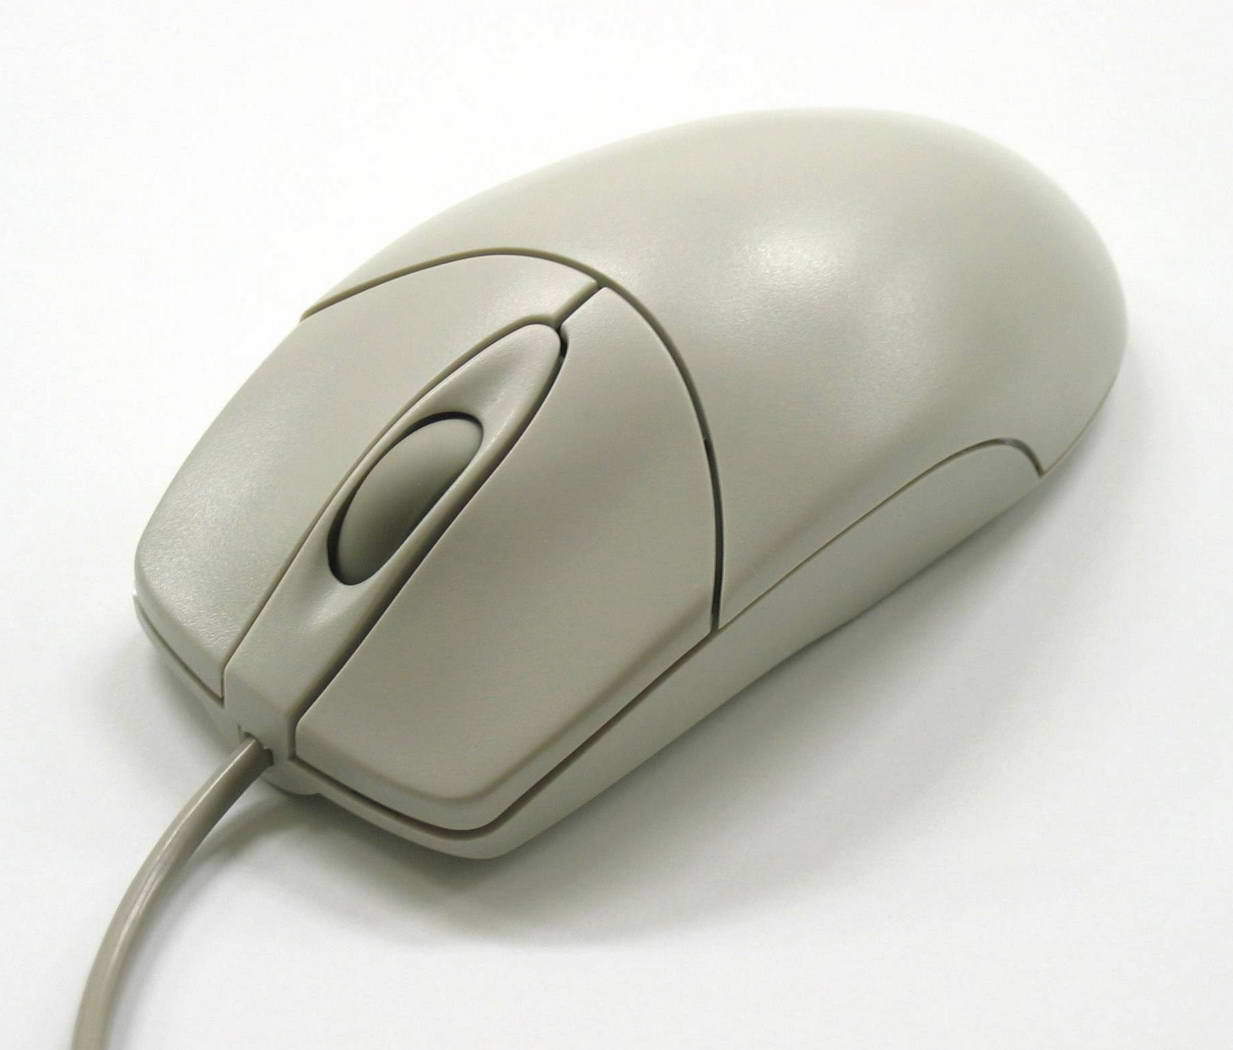 Un outil indispensable en informatique : la souris. Mais la connaissez-vous vraiment ?